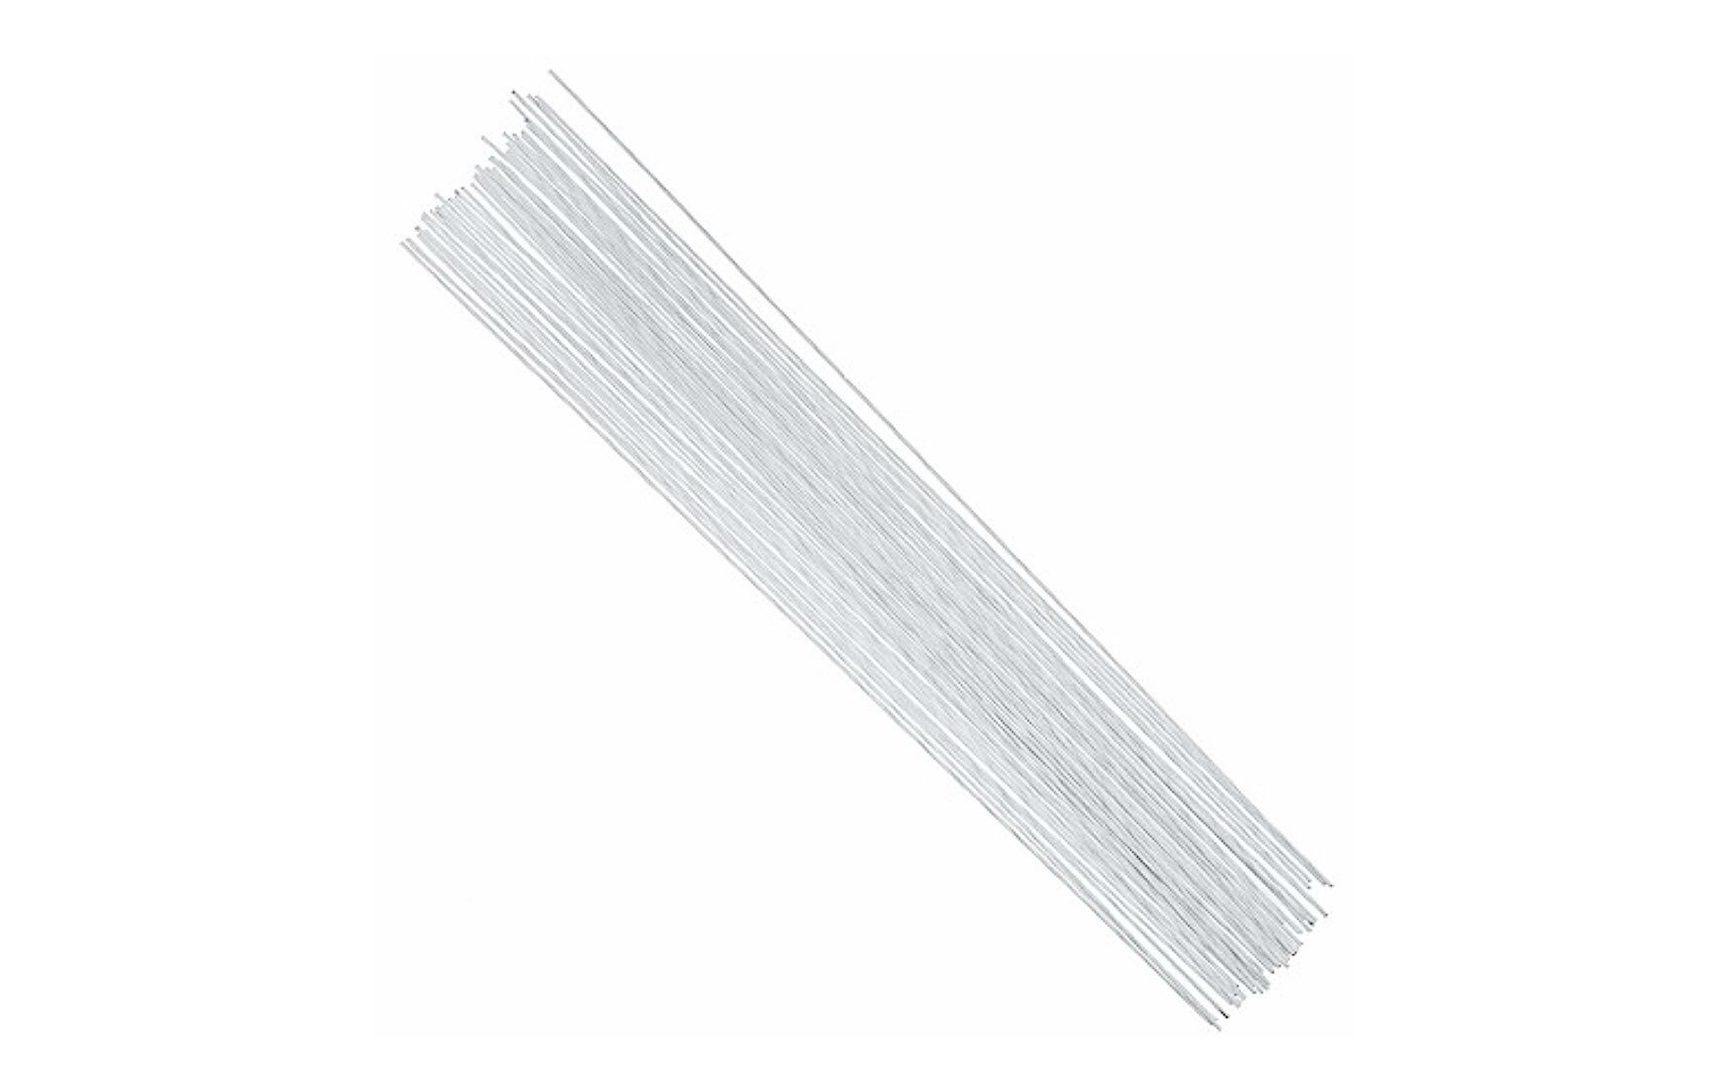 Decora DECORA 20 Gauge White Floral Stem Wire 16 inch,50/Package